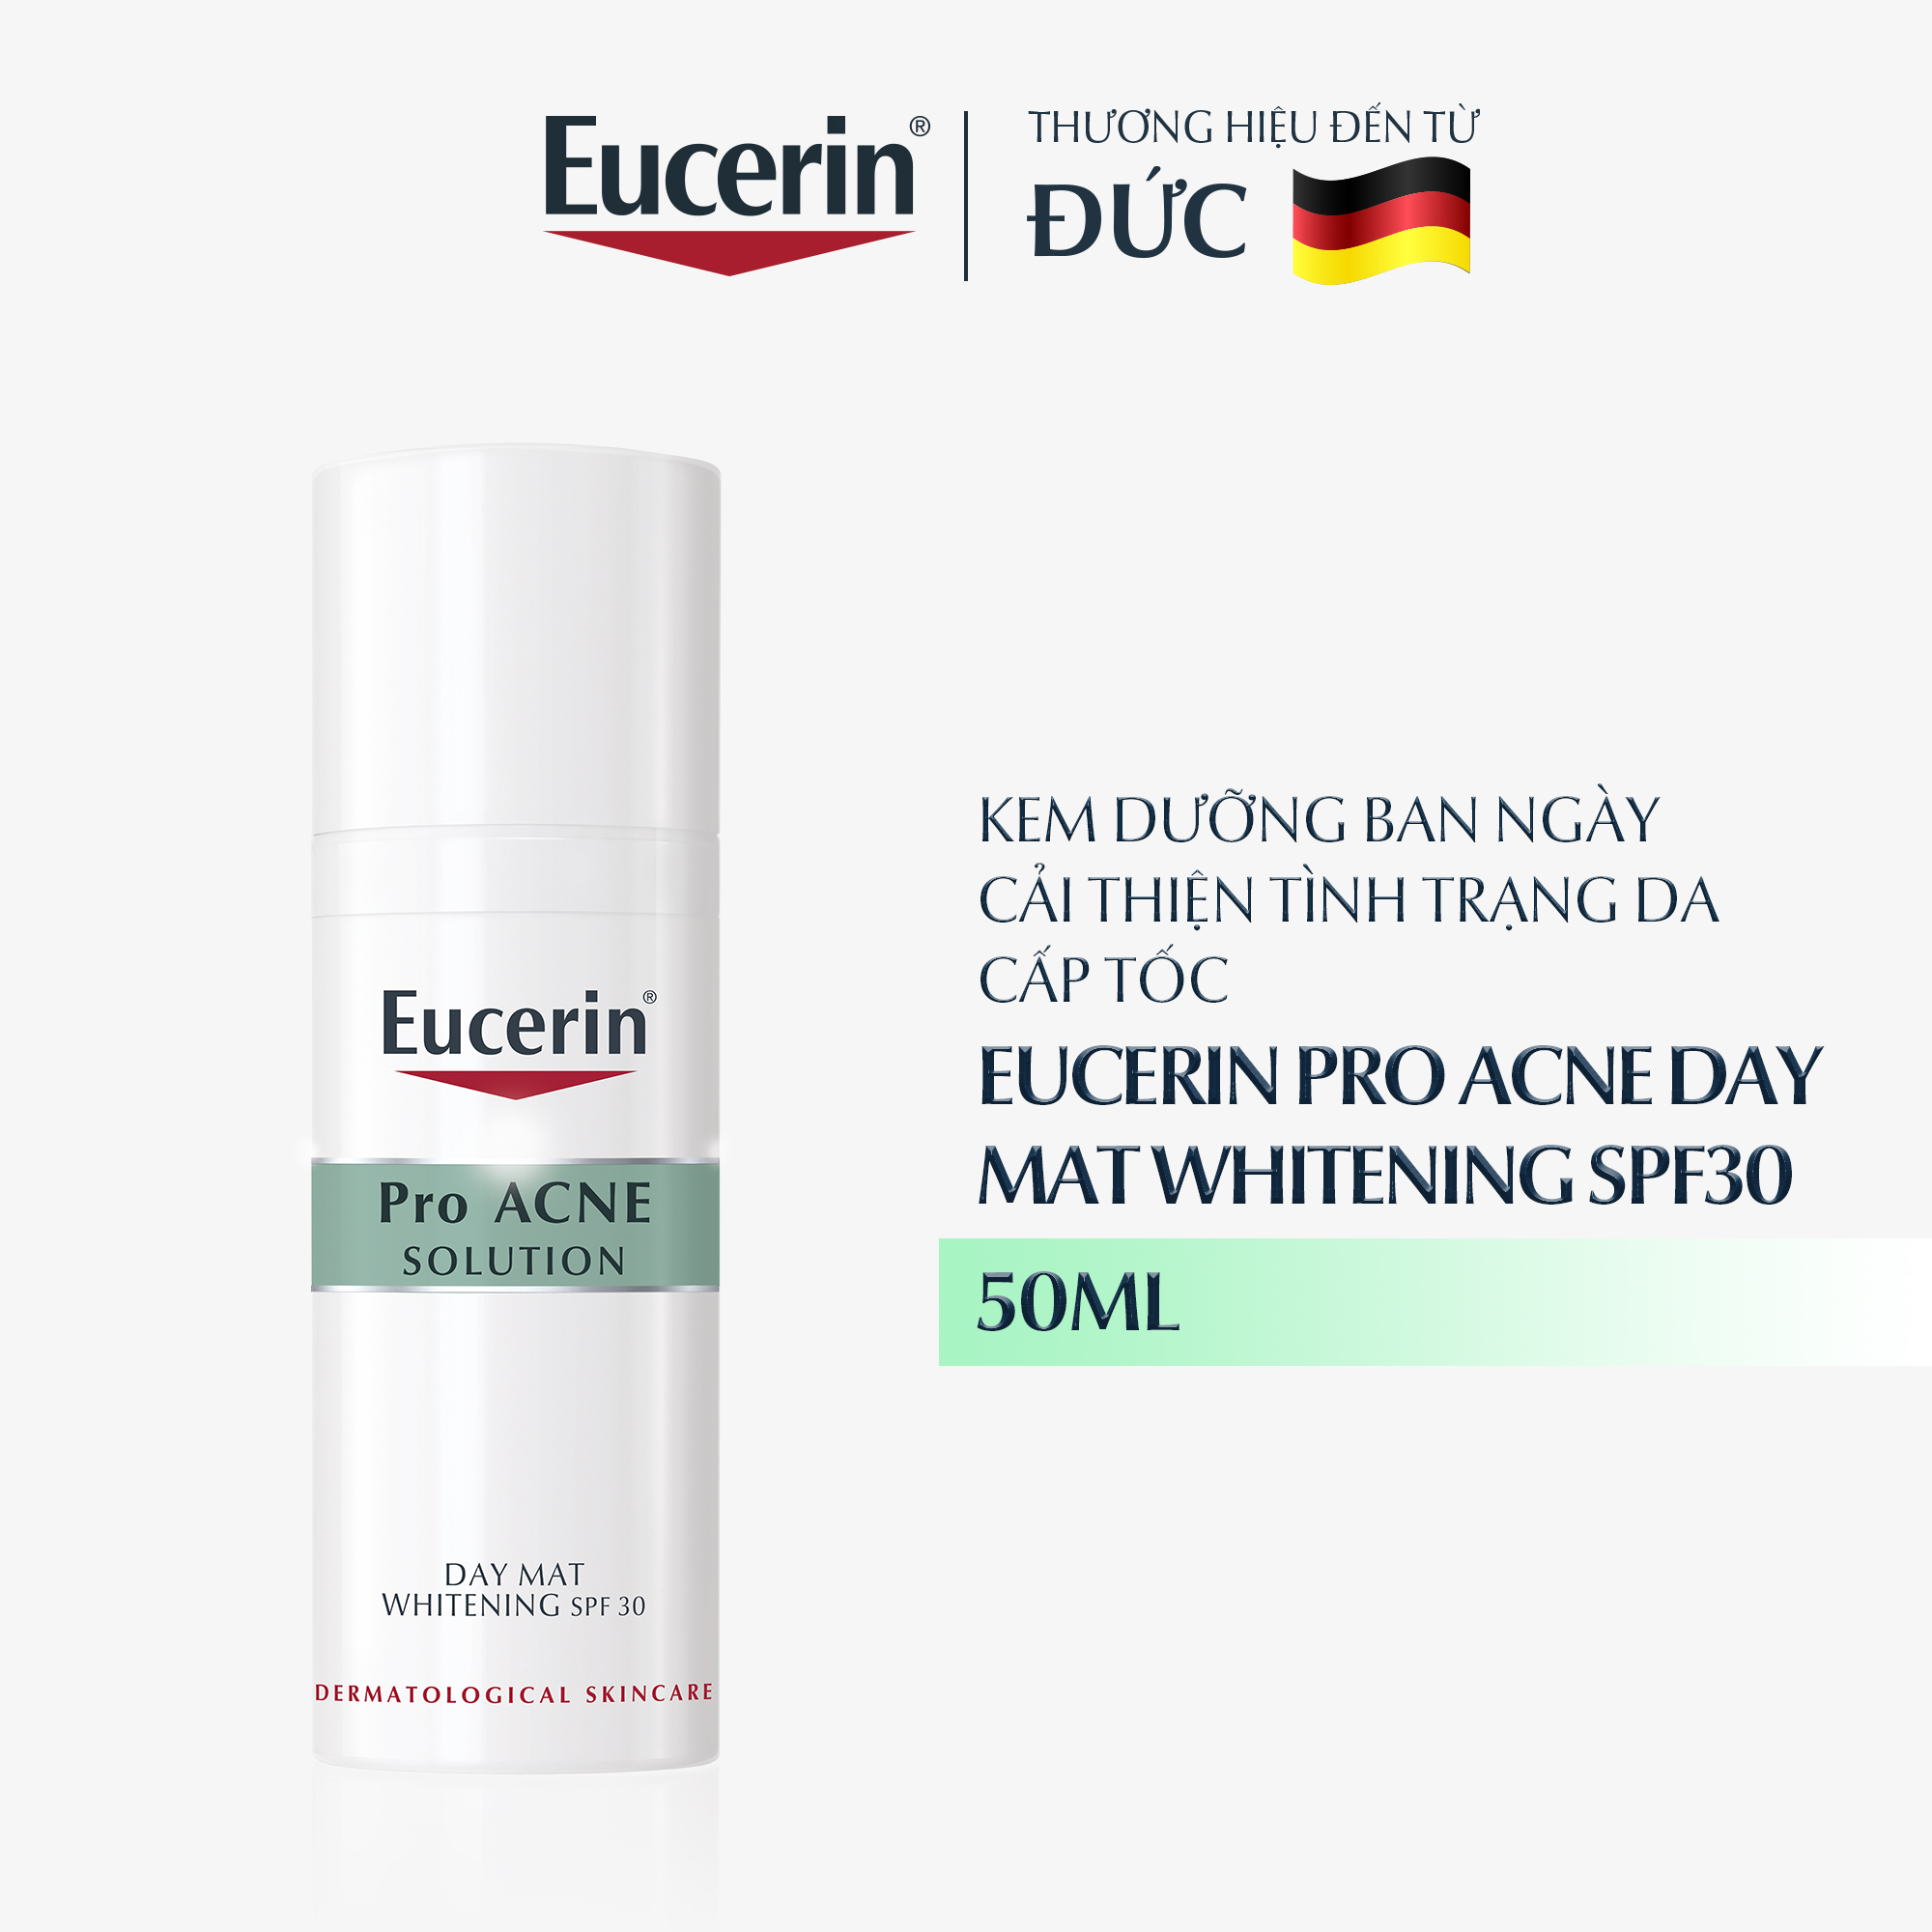 Kem Dưỡng Ban Ngày Eucerin Pro Acne Day MAT Whitening SPF30 Giúp Giảm Mụn Và Trắng Da 50ml